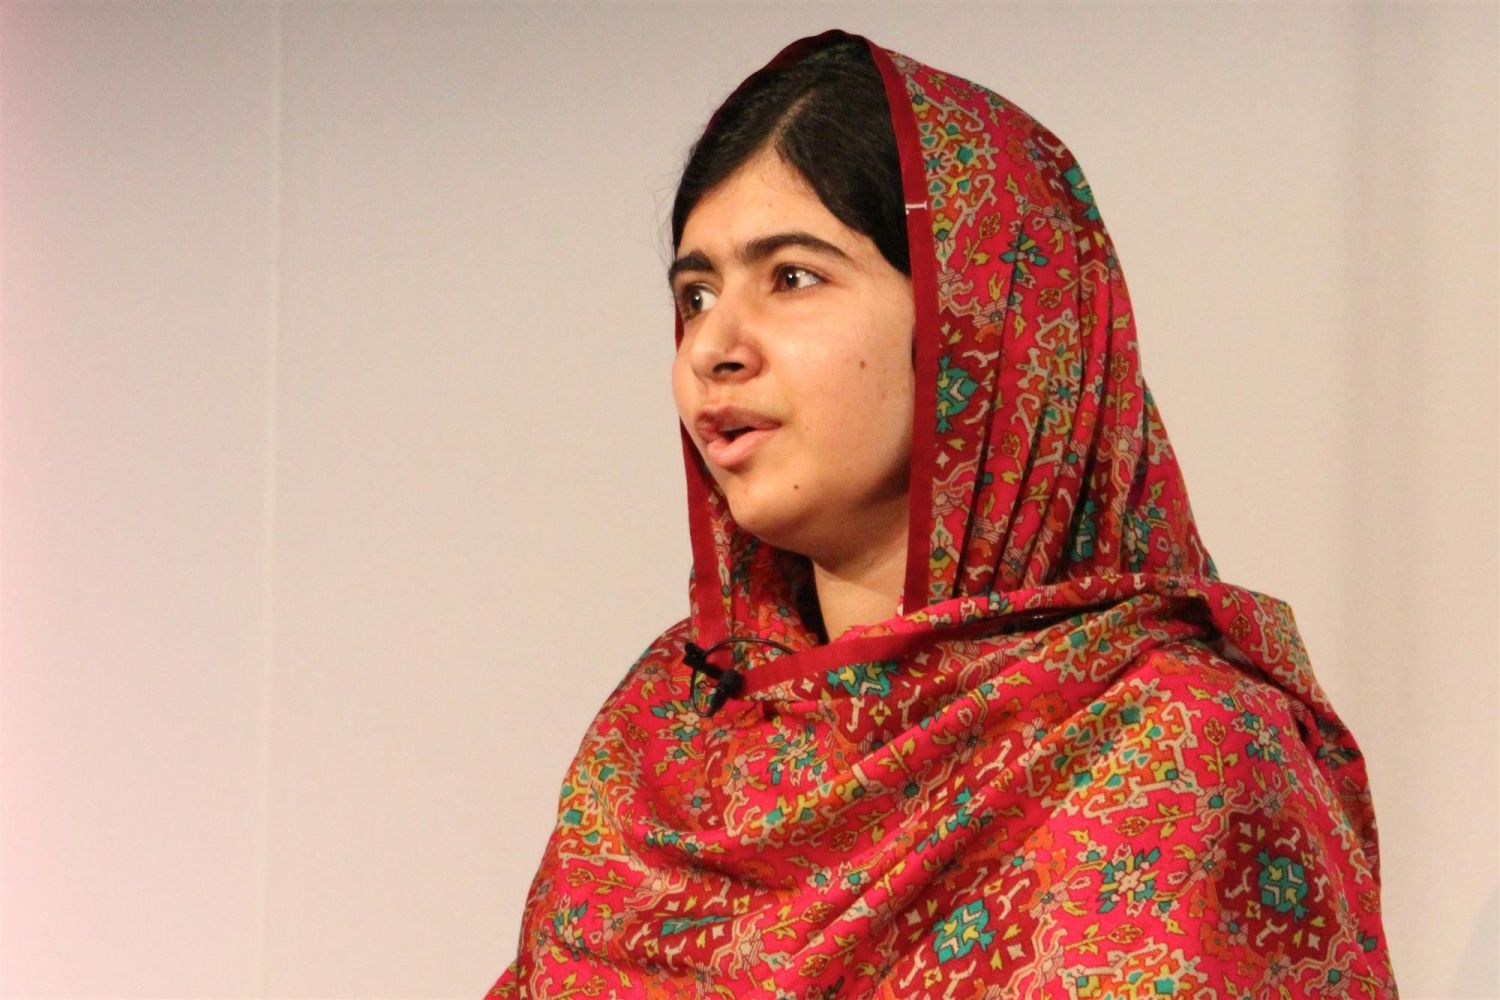 El Ataque a Malala Yousafzai